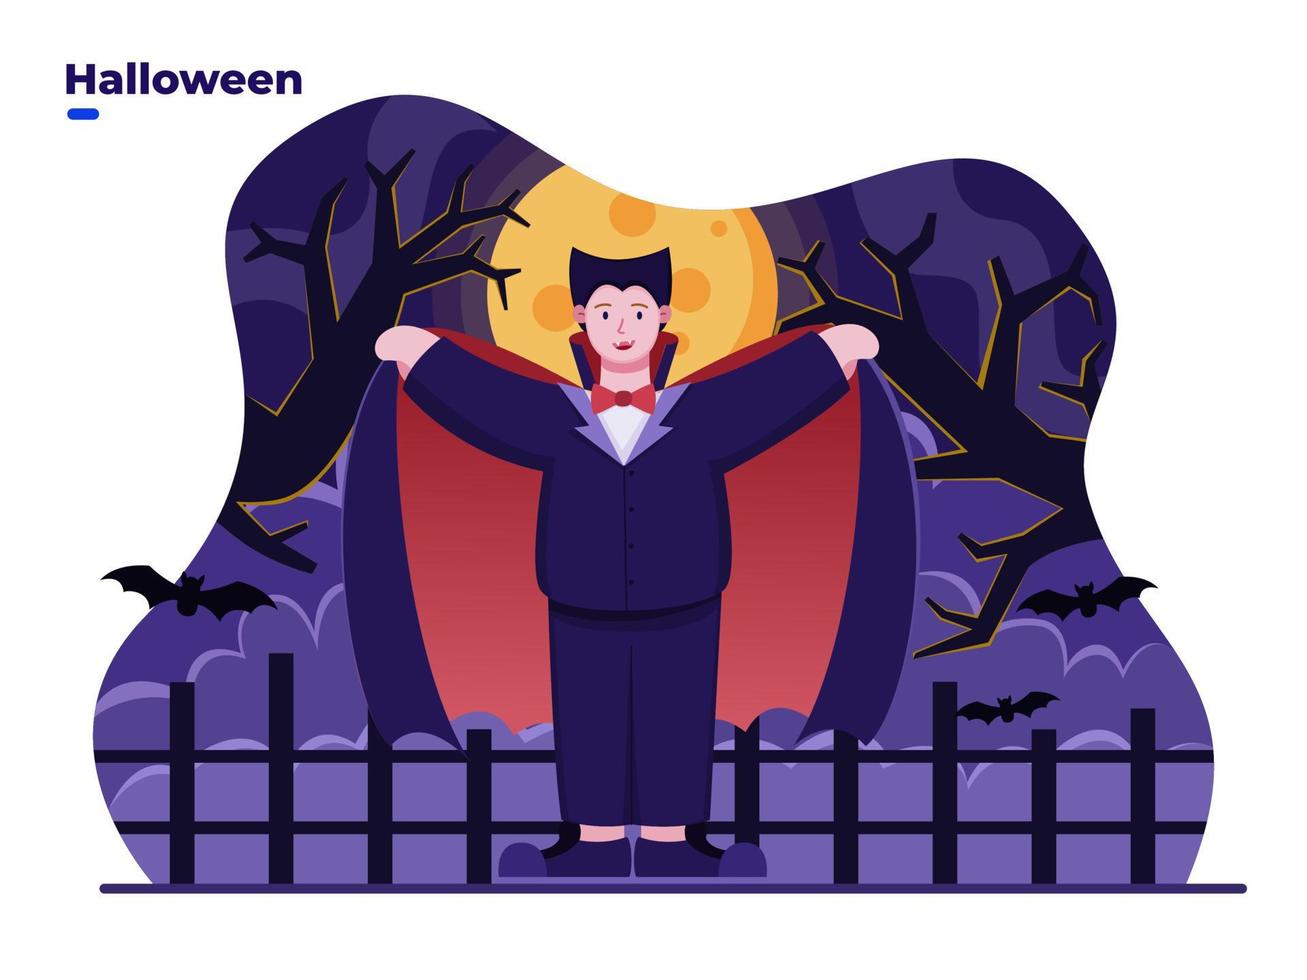 niños de ilustración plana con traje de vampiro para celebrar el día de halloween. Feliz día de halloween. se puede utilizar para tarjetas de felicitación, postales, invitaciones, pancartas, carteles, redes sociales. vector